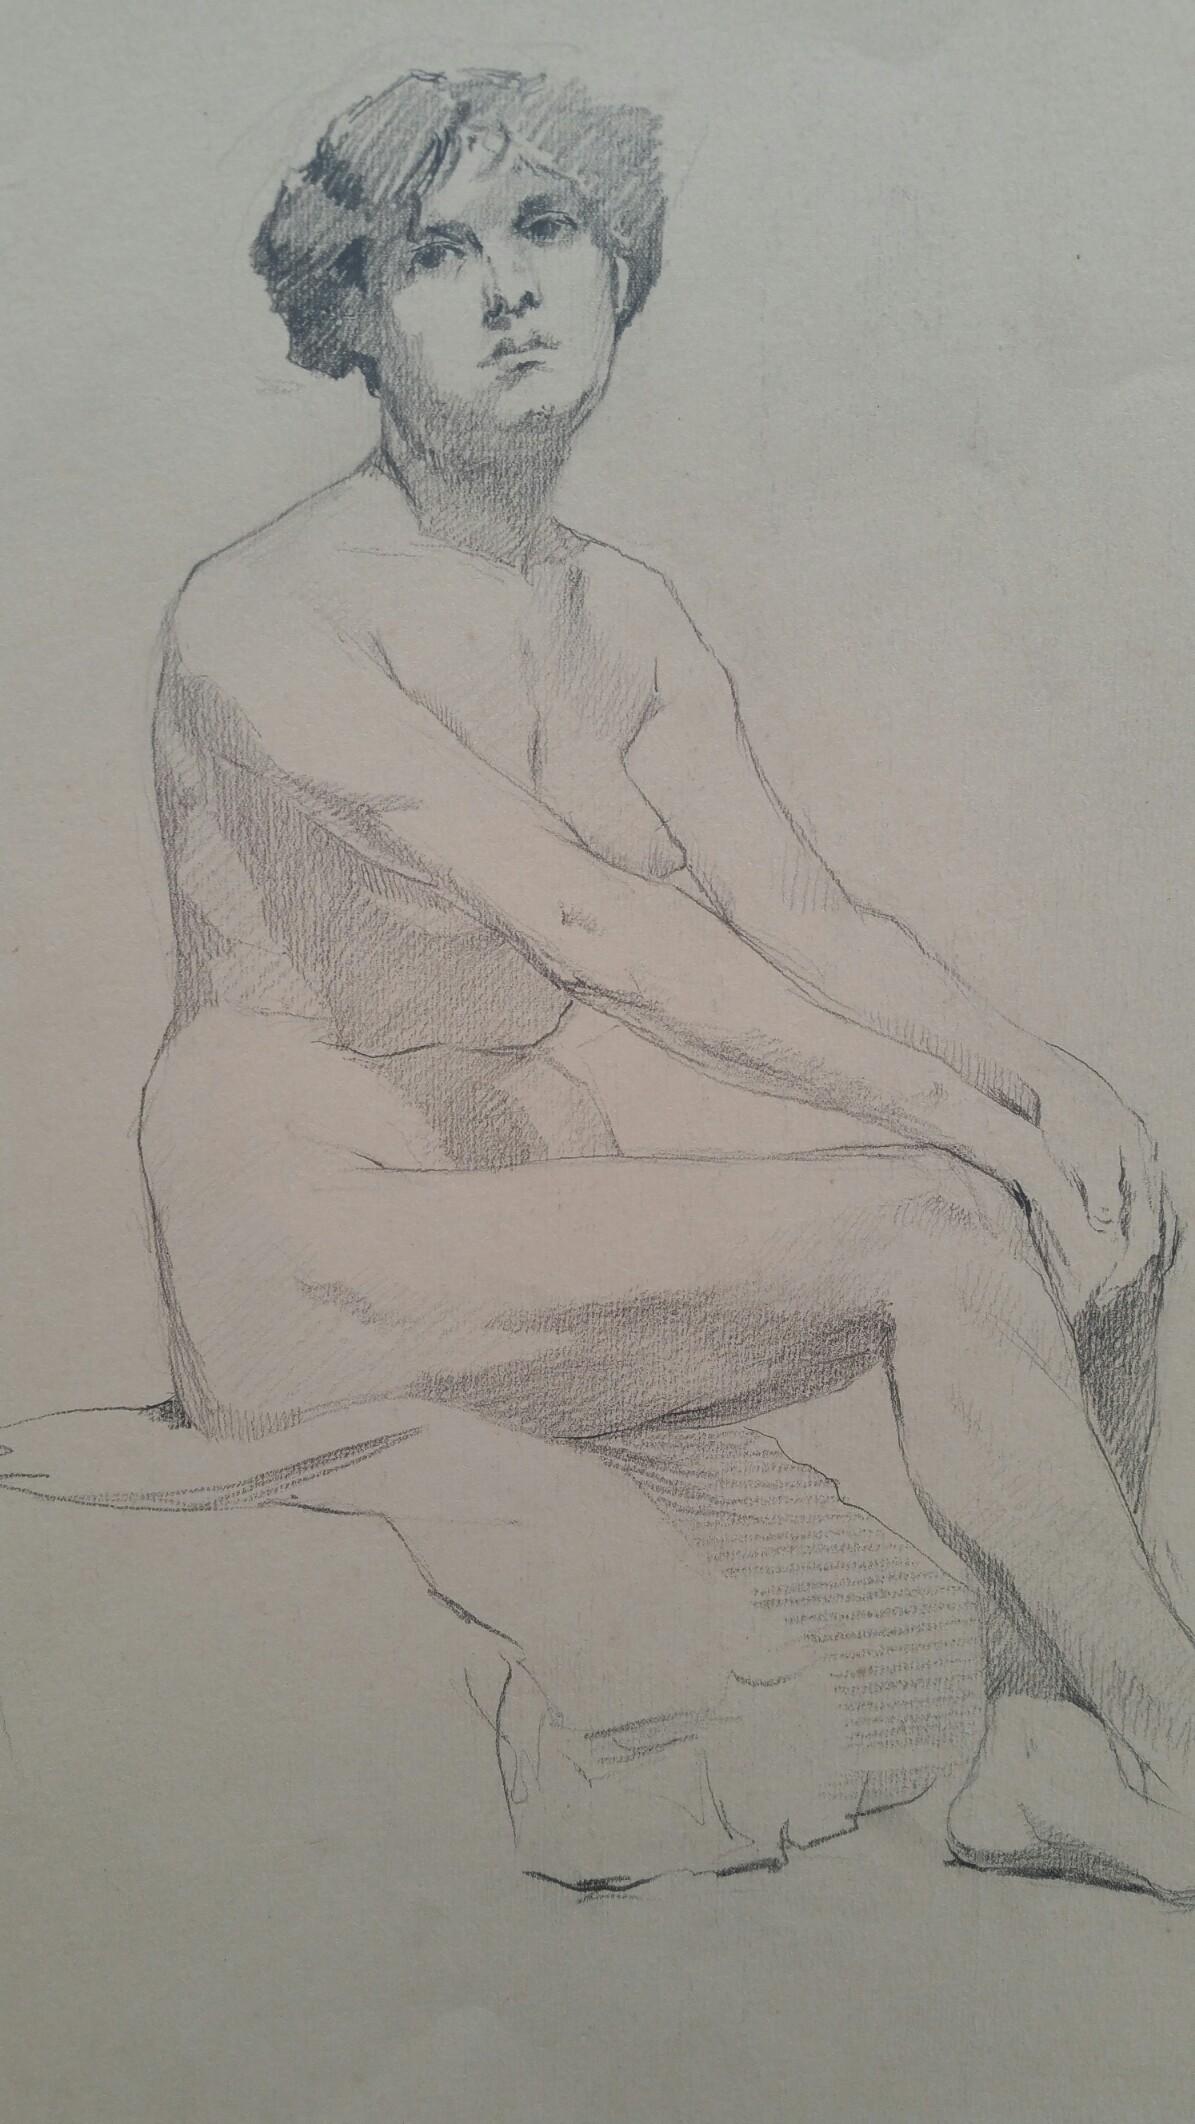 English Graphite Portrait Sketch of Female Nude, Sitting in Profile